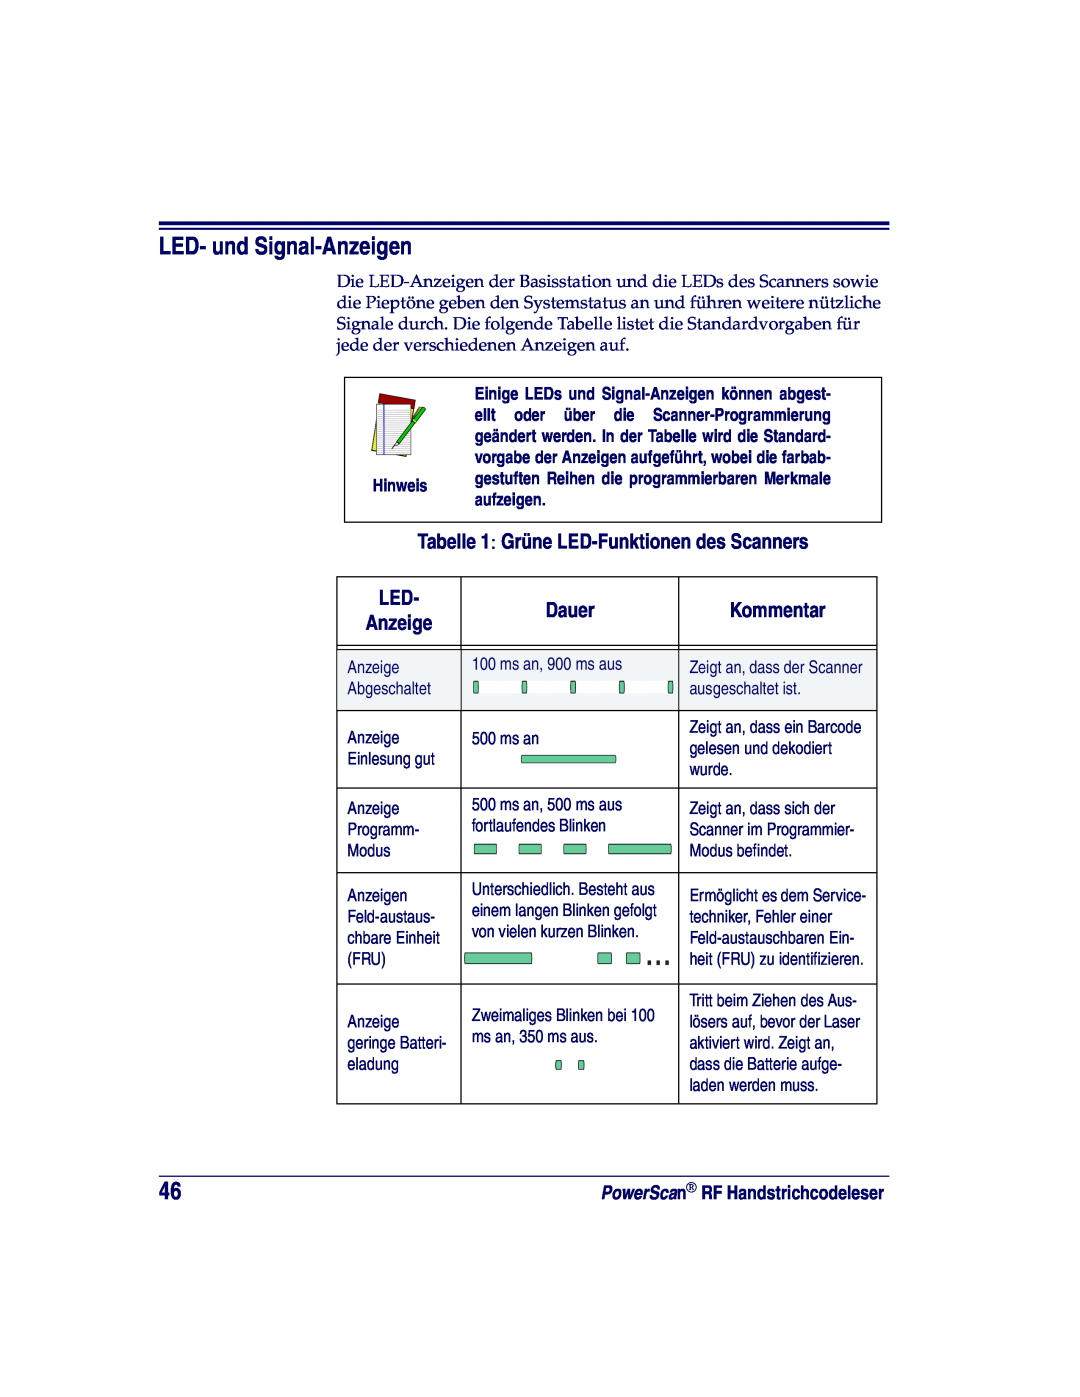 Datalogic Scanning LR LED- und Signal-Anzeigen, Dauer, Kommentar, Tabelle 1 Grüne LED-Funktionendes Scanners, aufzeigen 